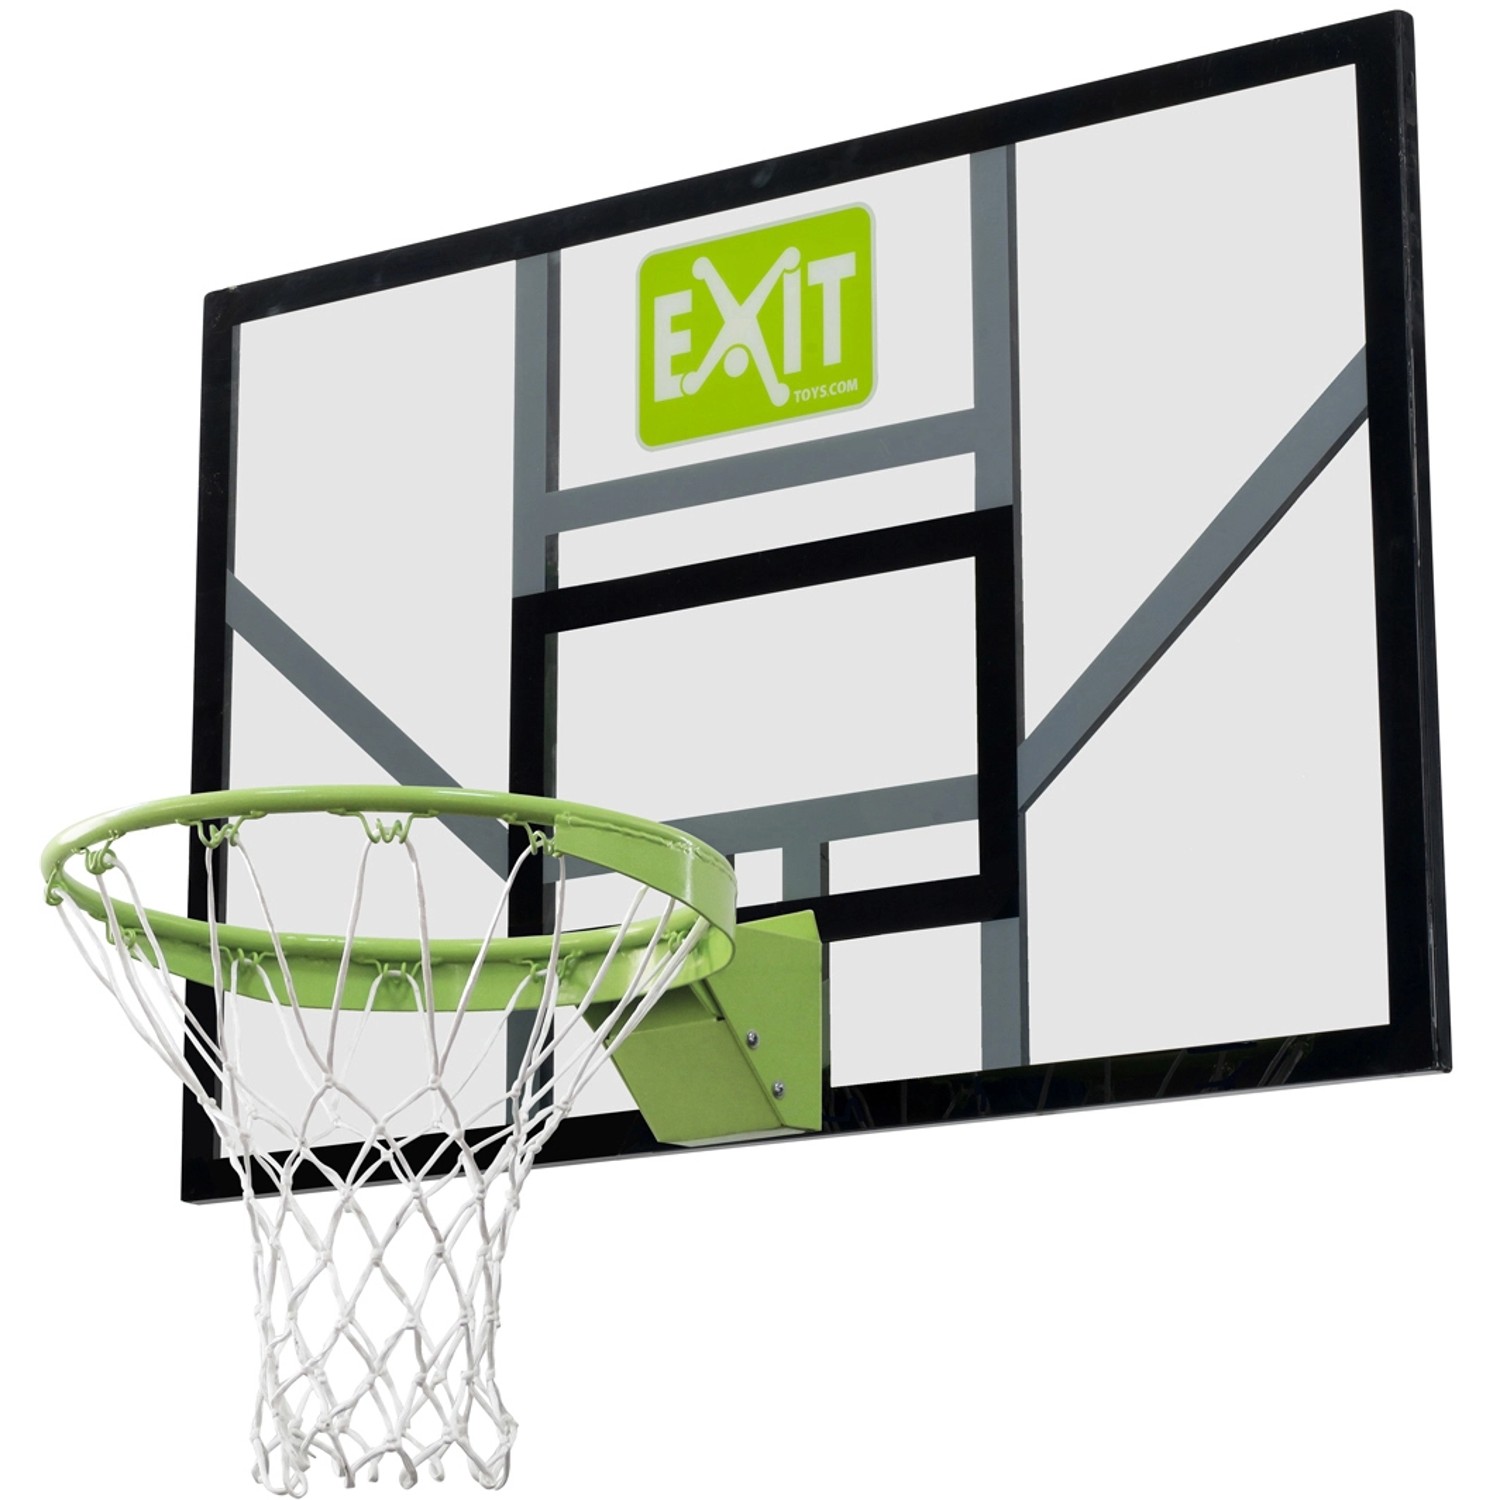 EXIT Galaxy Basketballbrett mit Dunkring und Netz - grün/schwarz von Exit Toys